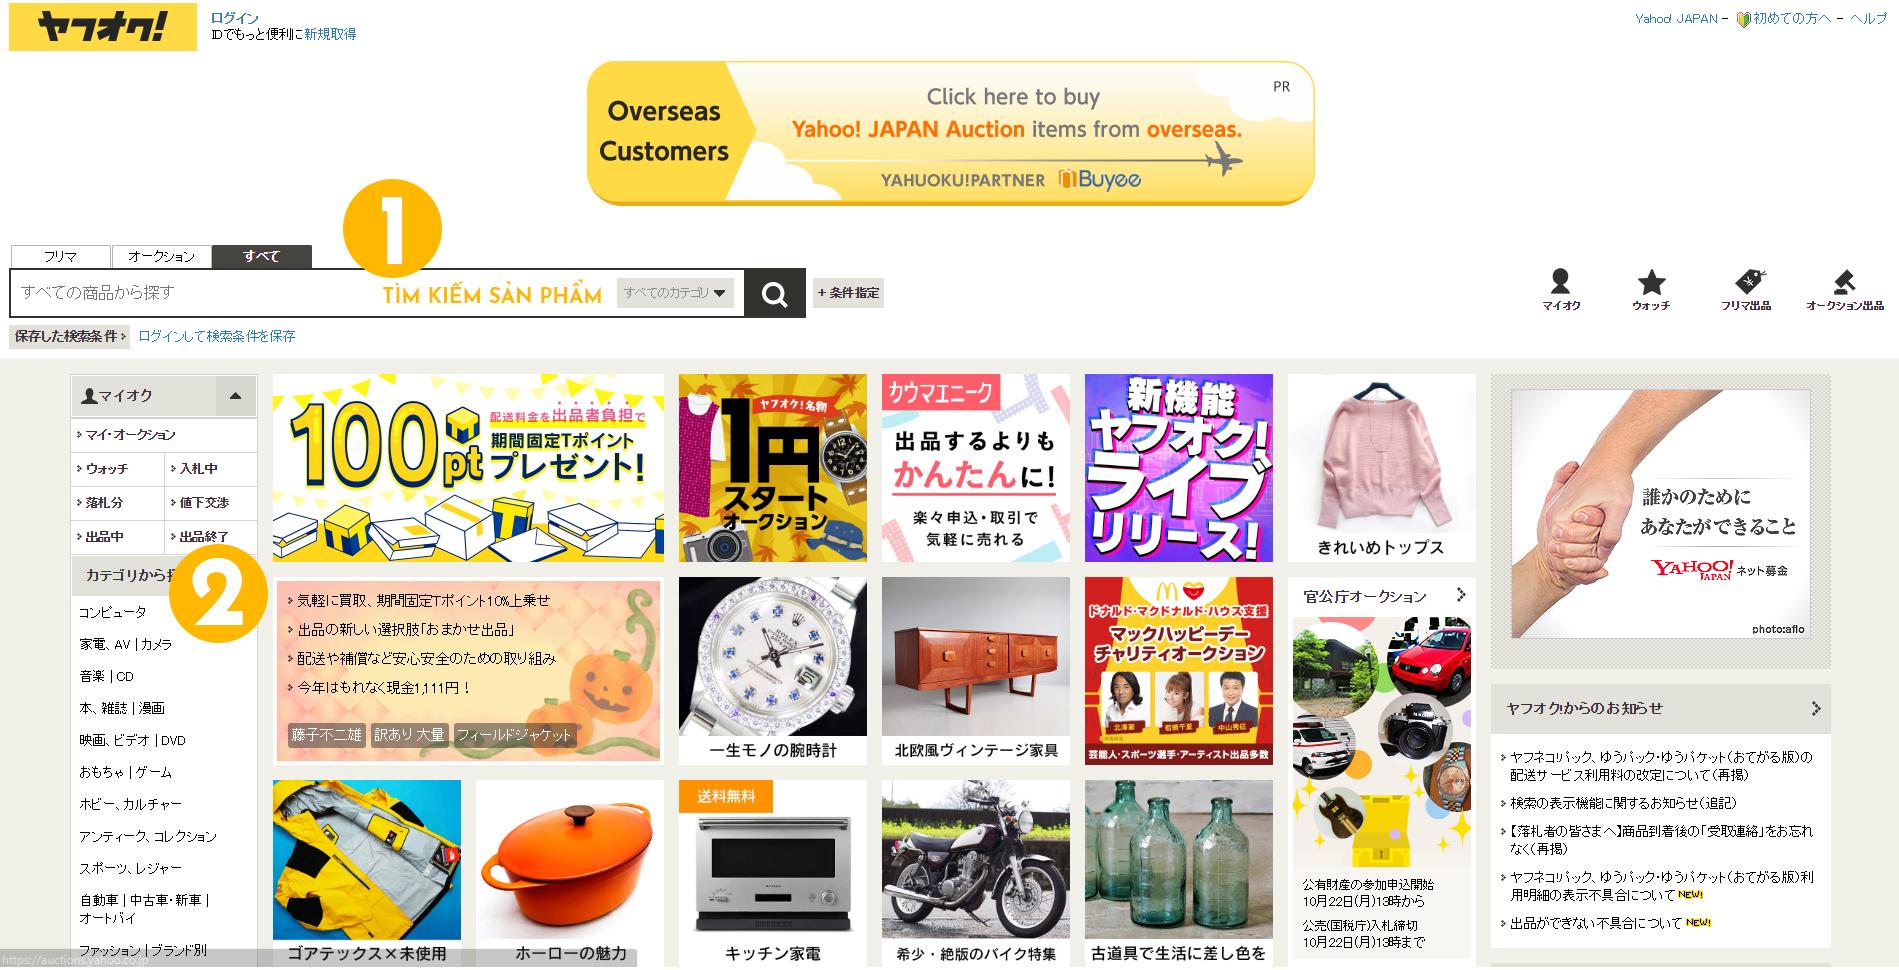 Quy trình khiếu nại trên Yahoo Auction khi đấu giá hàng Nhật Bản